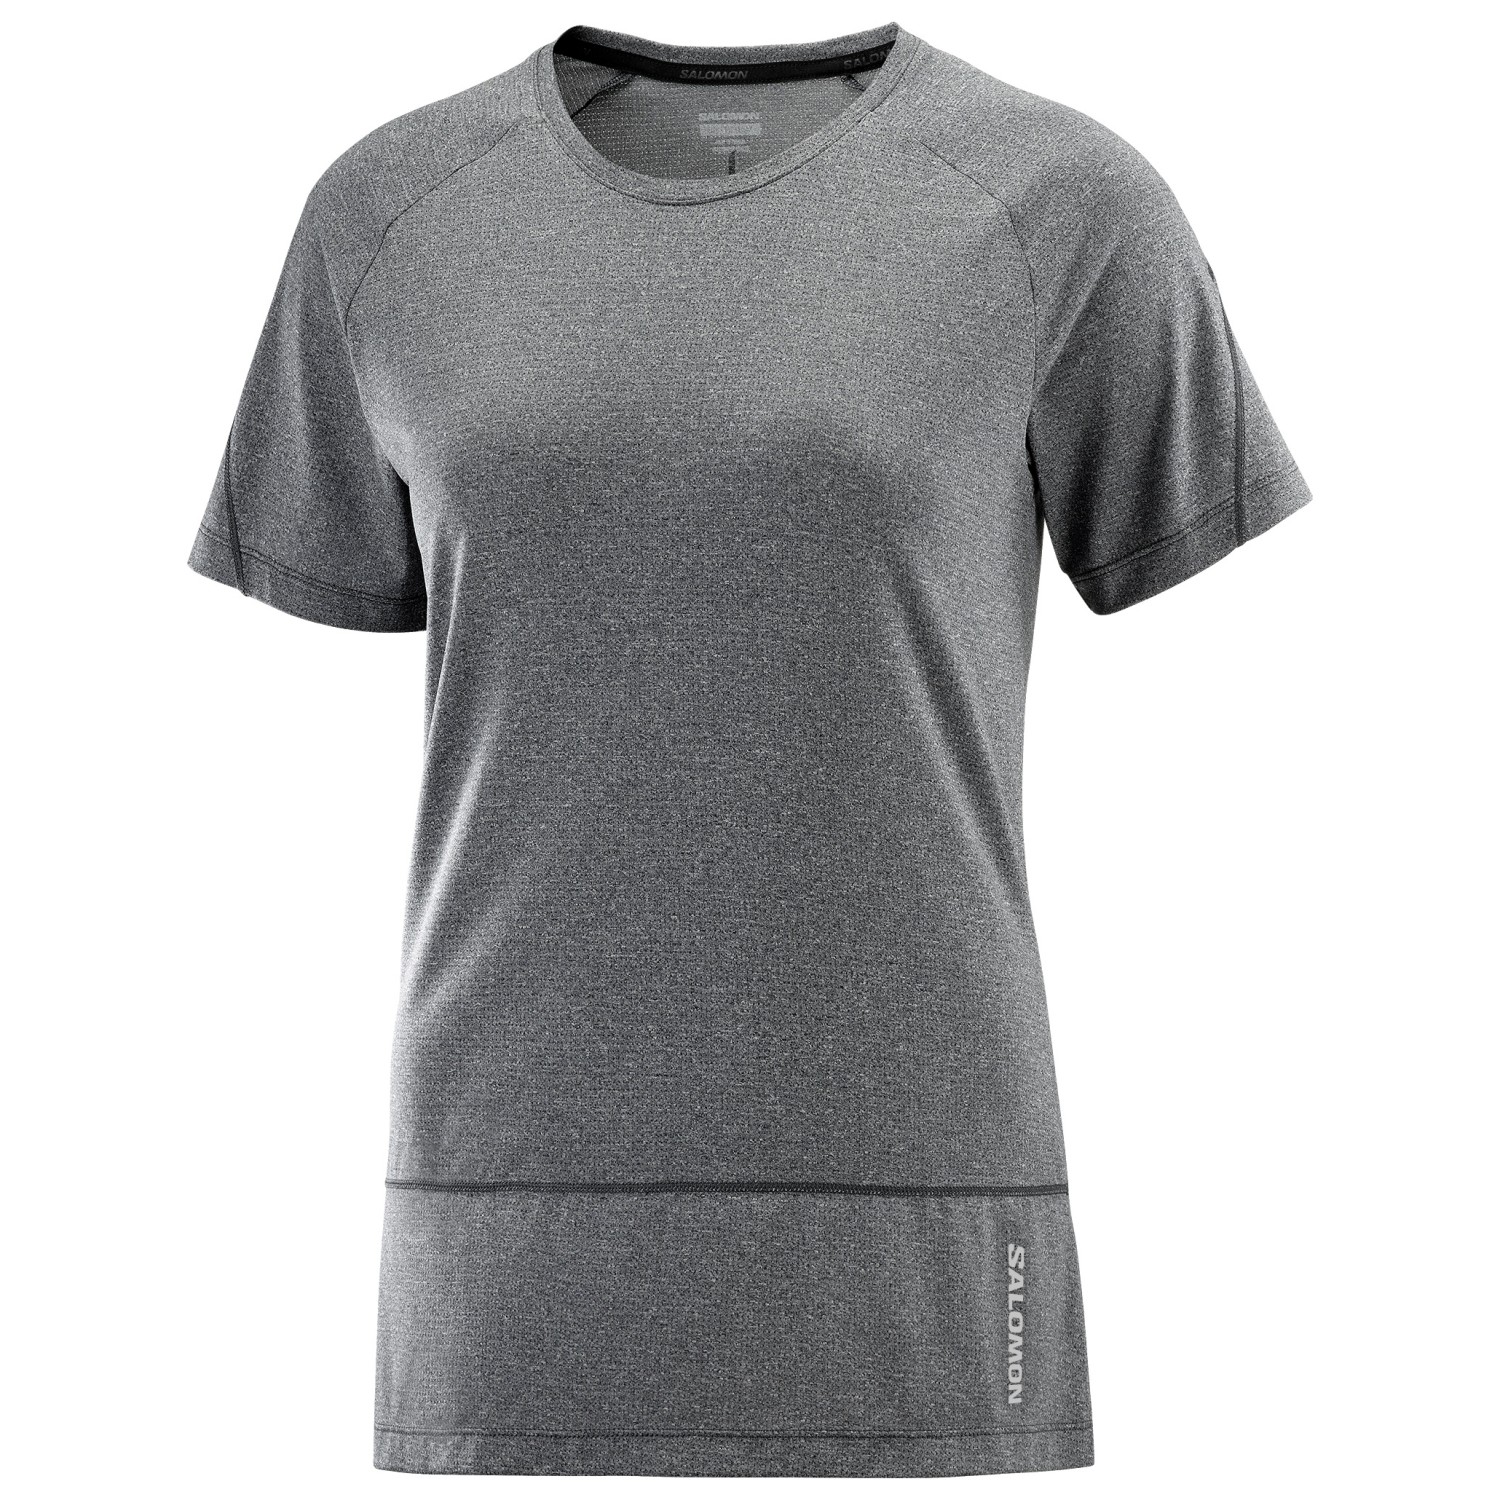 Беговая рубашка Salomon Women's Cross Run S/S Tee, цвет Deep Black/Heather цена и фото